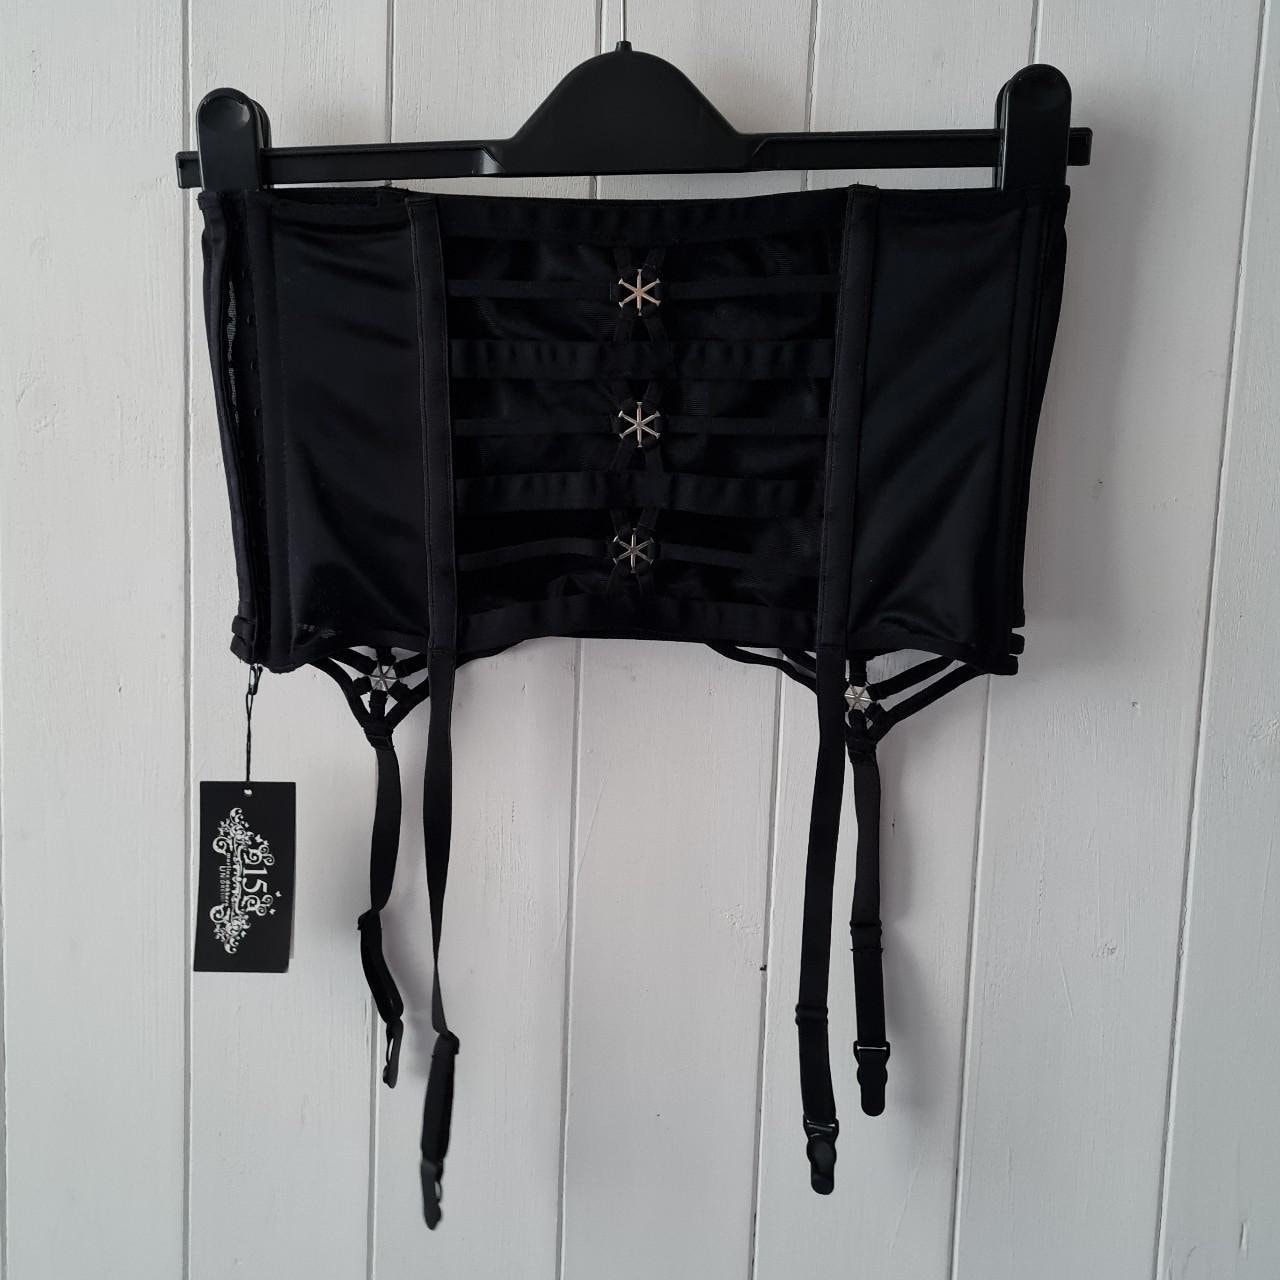 Marlies Dekkers cage suspender belt in black, undressed collection, deadstock unworn, gift for herthumbnail